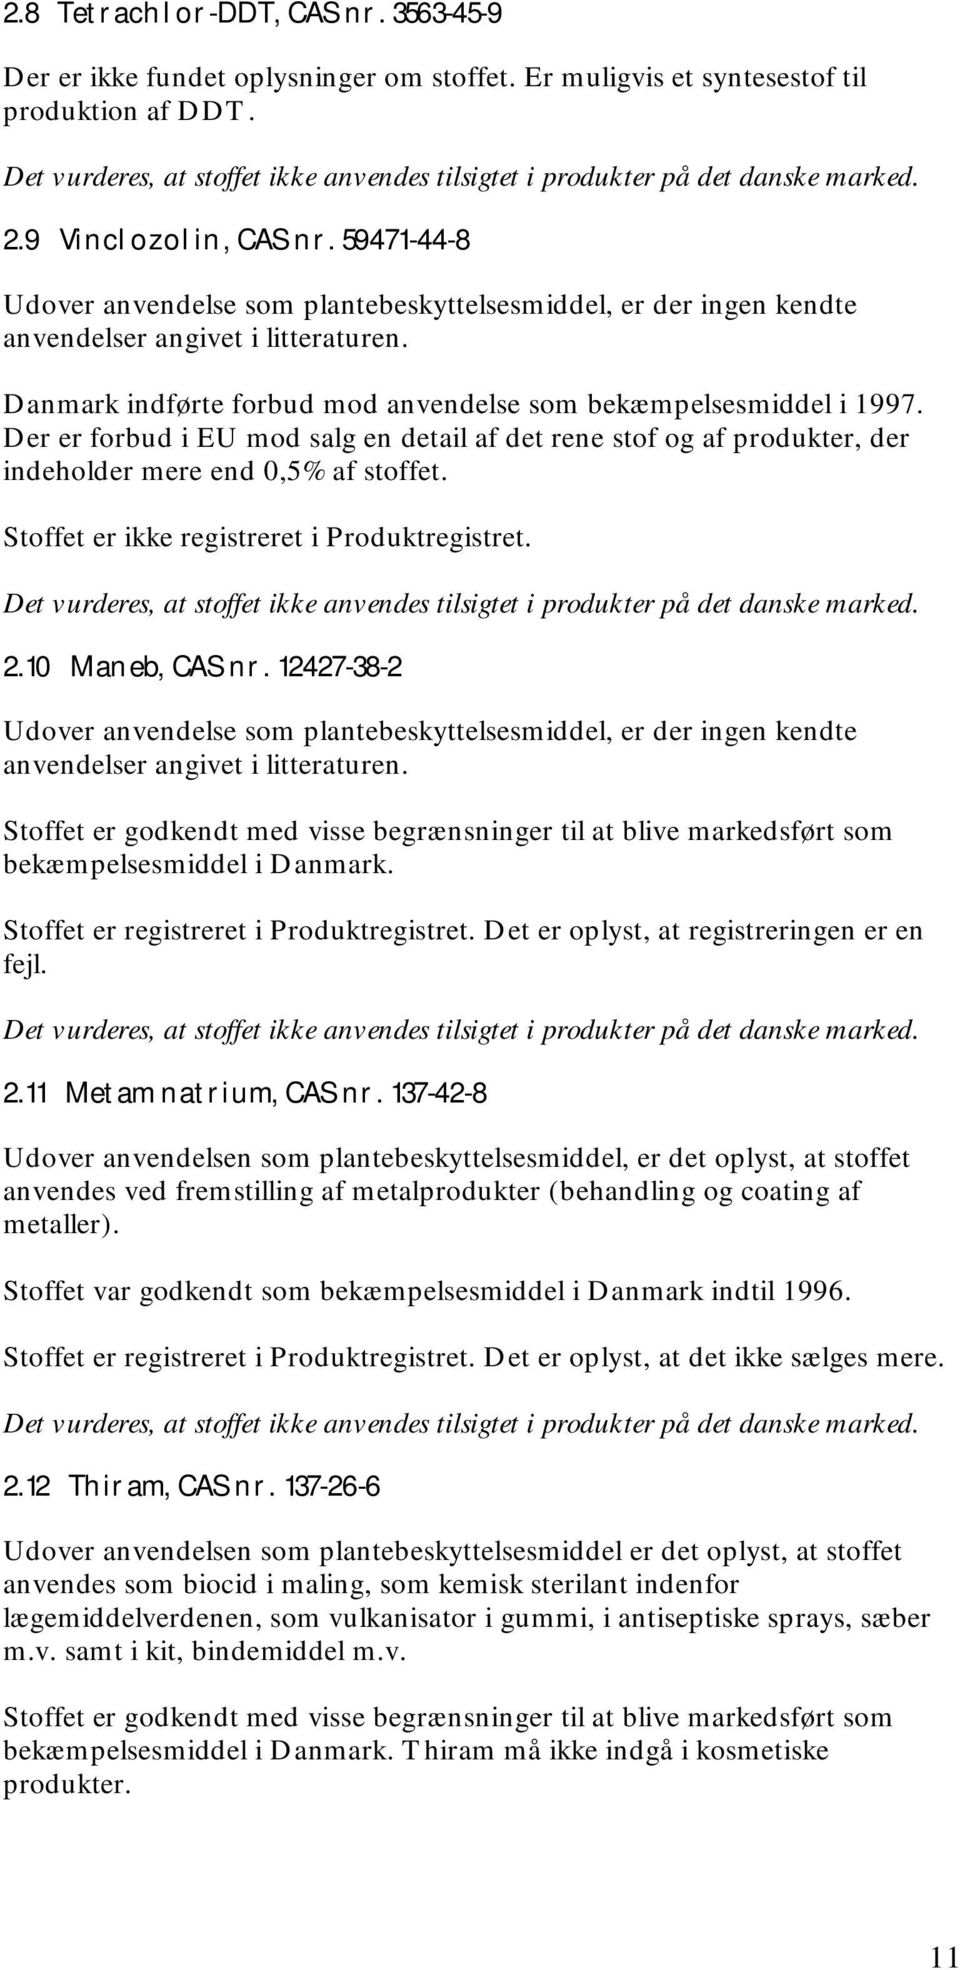 59471-44-8 Udover anvendelse som plantebeskyttelsesmiddel, er der ingen kendte anvendelser angivet i litteraturen. Danmark indførte forbud mod anvendelse som bekæmpelsesmiddel i 1997.